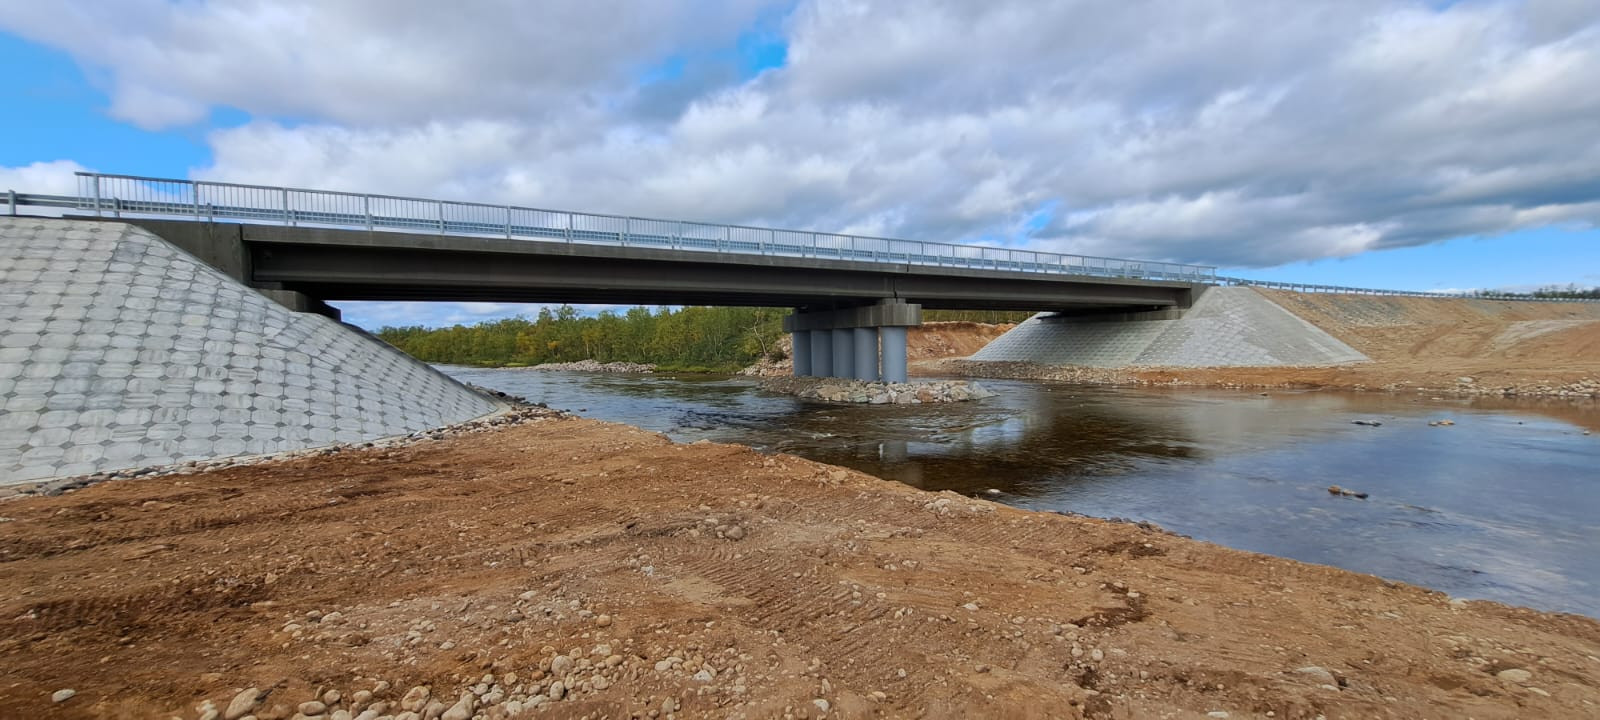 В Заполярье завершился ремонт моста через реку Эйнч